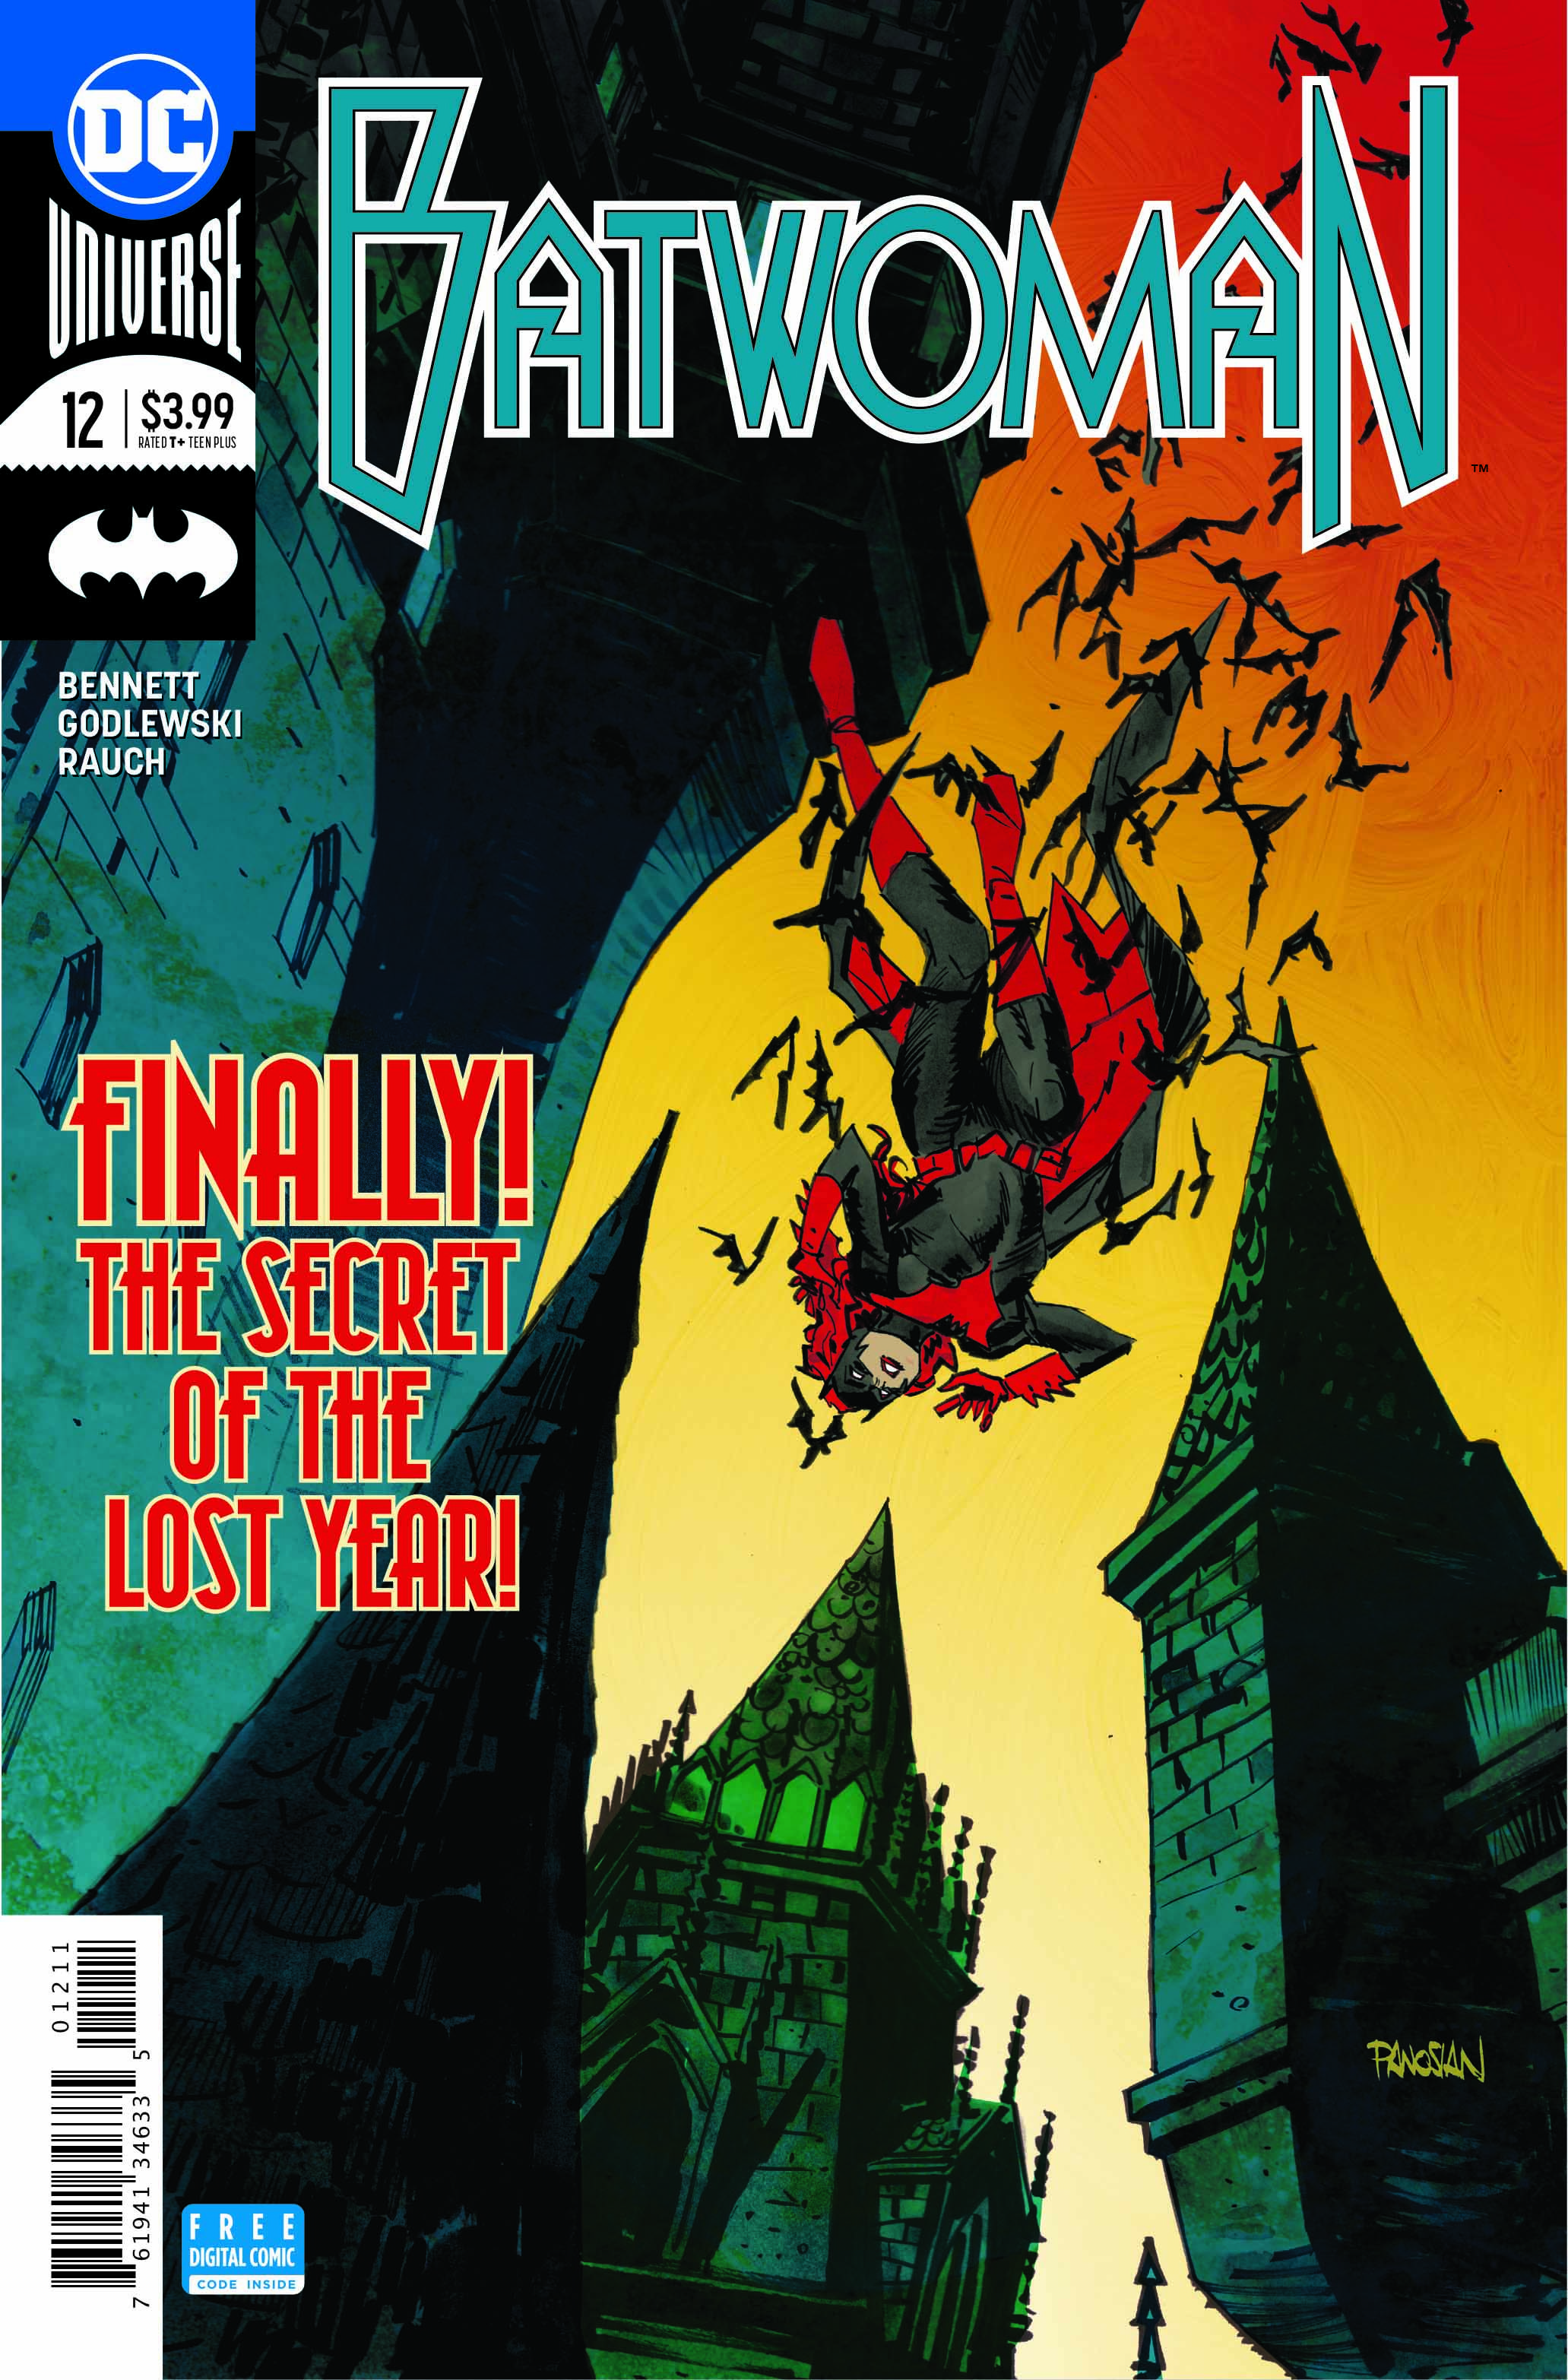 Batwoman #12 Review